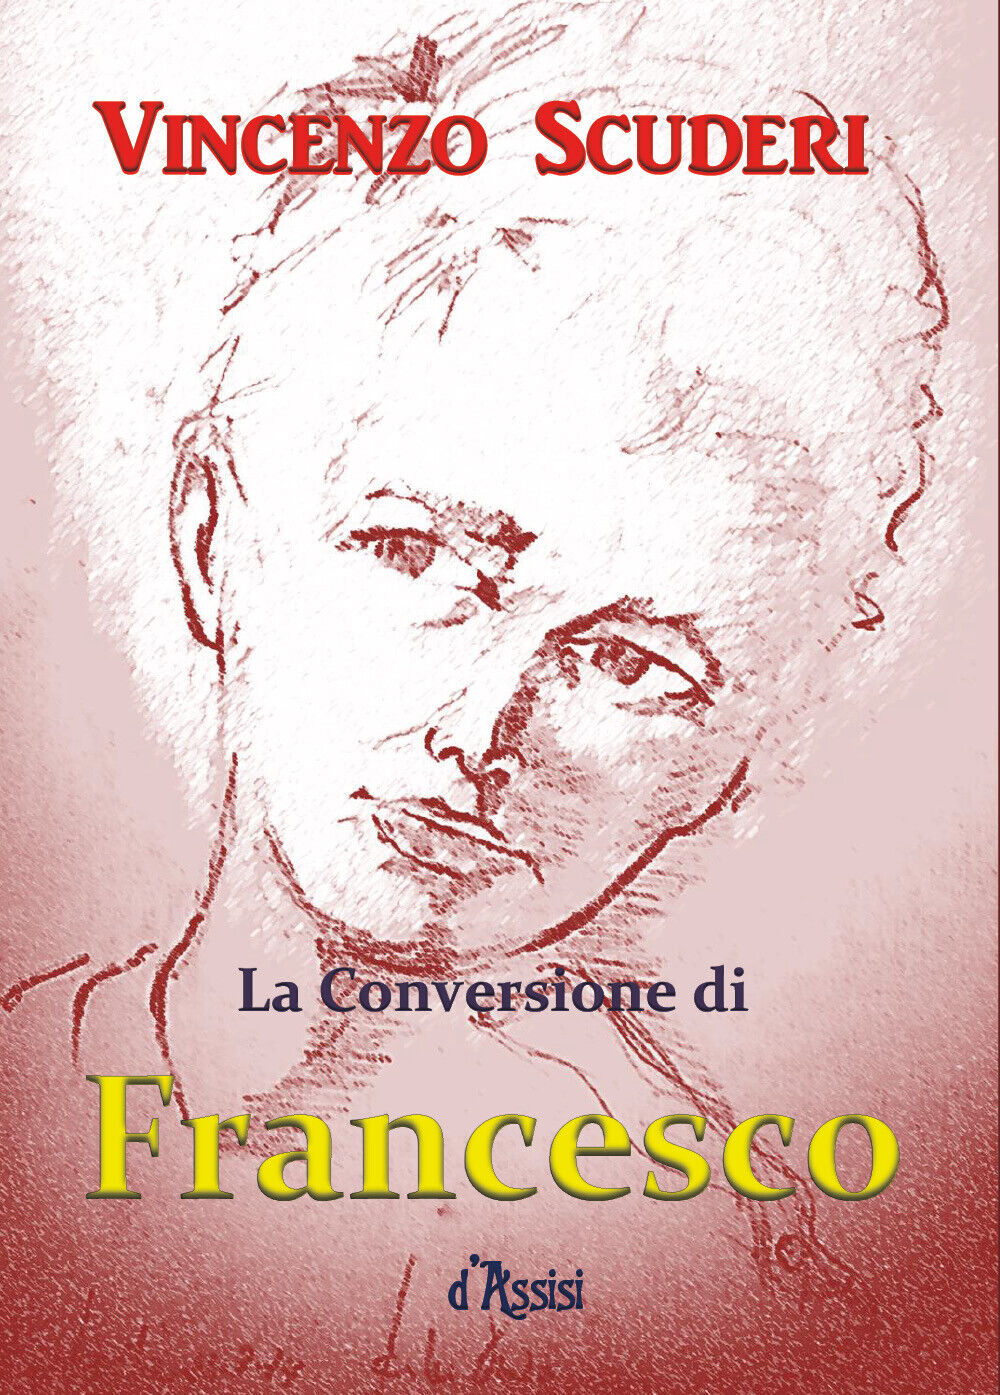 La Conversione di Francesco d'Assisi  di Vincenzo Scuderi,  2018,  Youcanprint libro usato